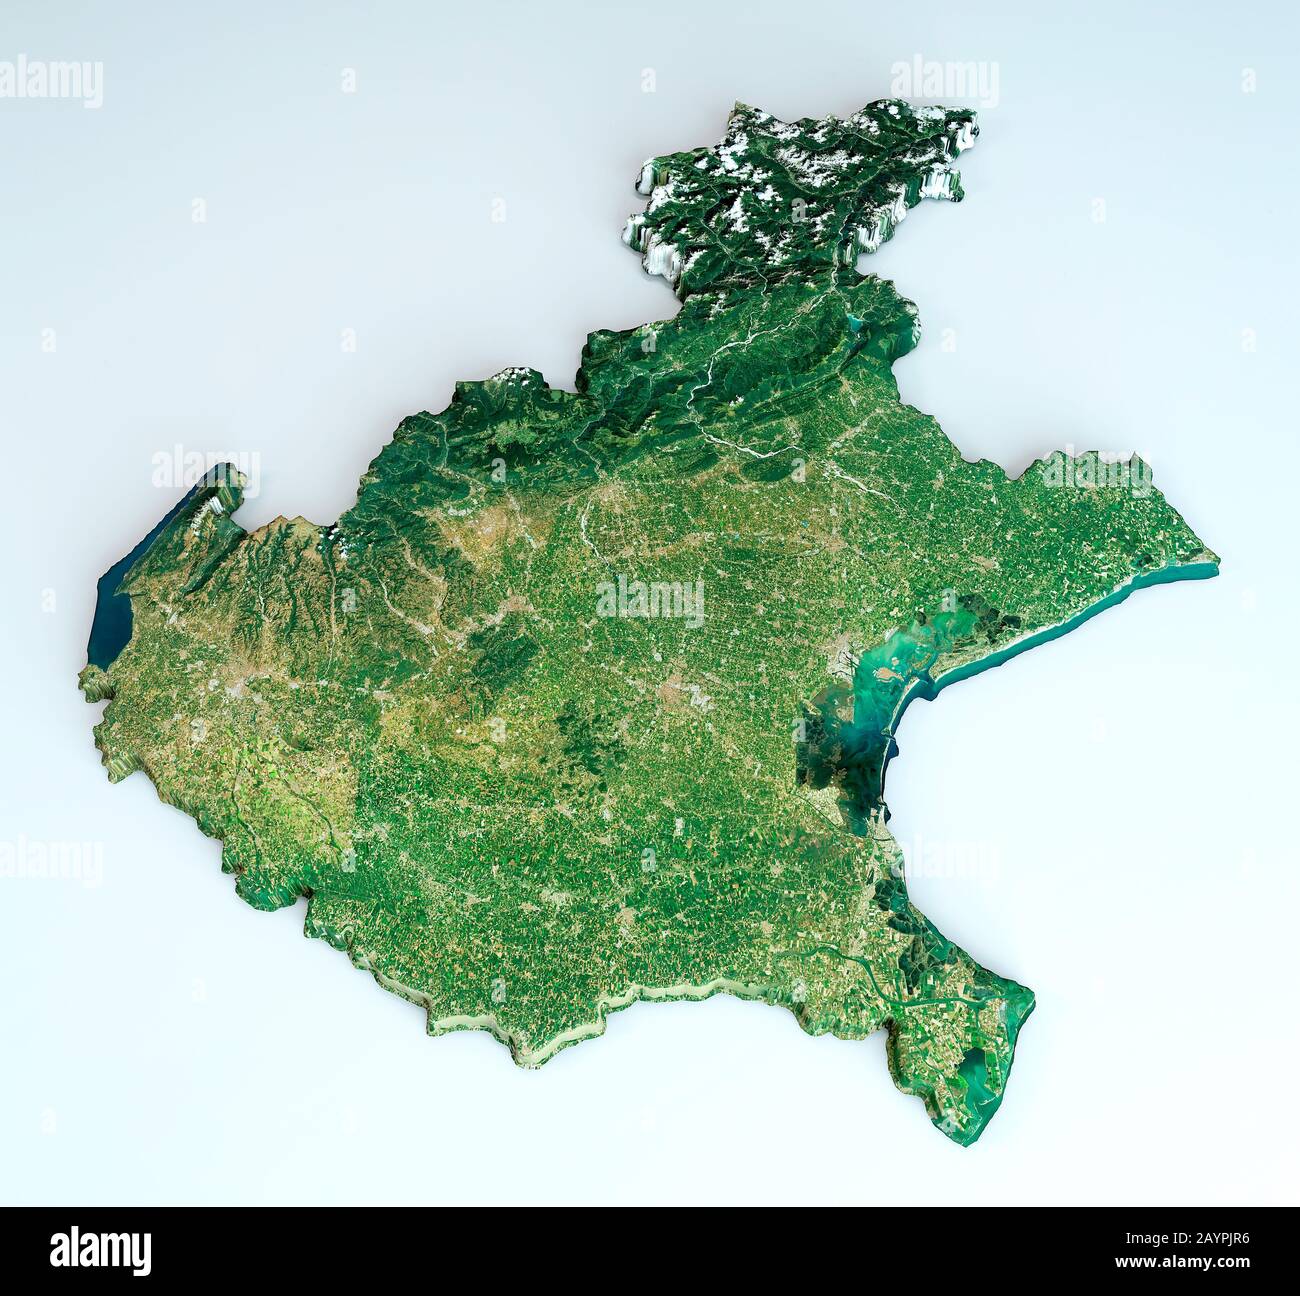 Veneto region map immagini e fotografie stock ad alta risoluzione - Alamy